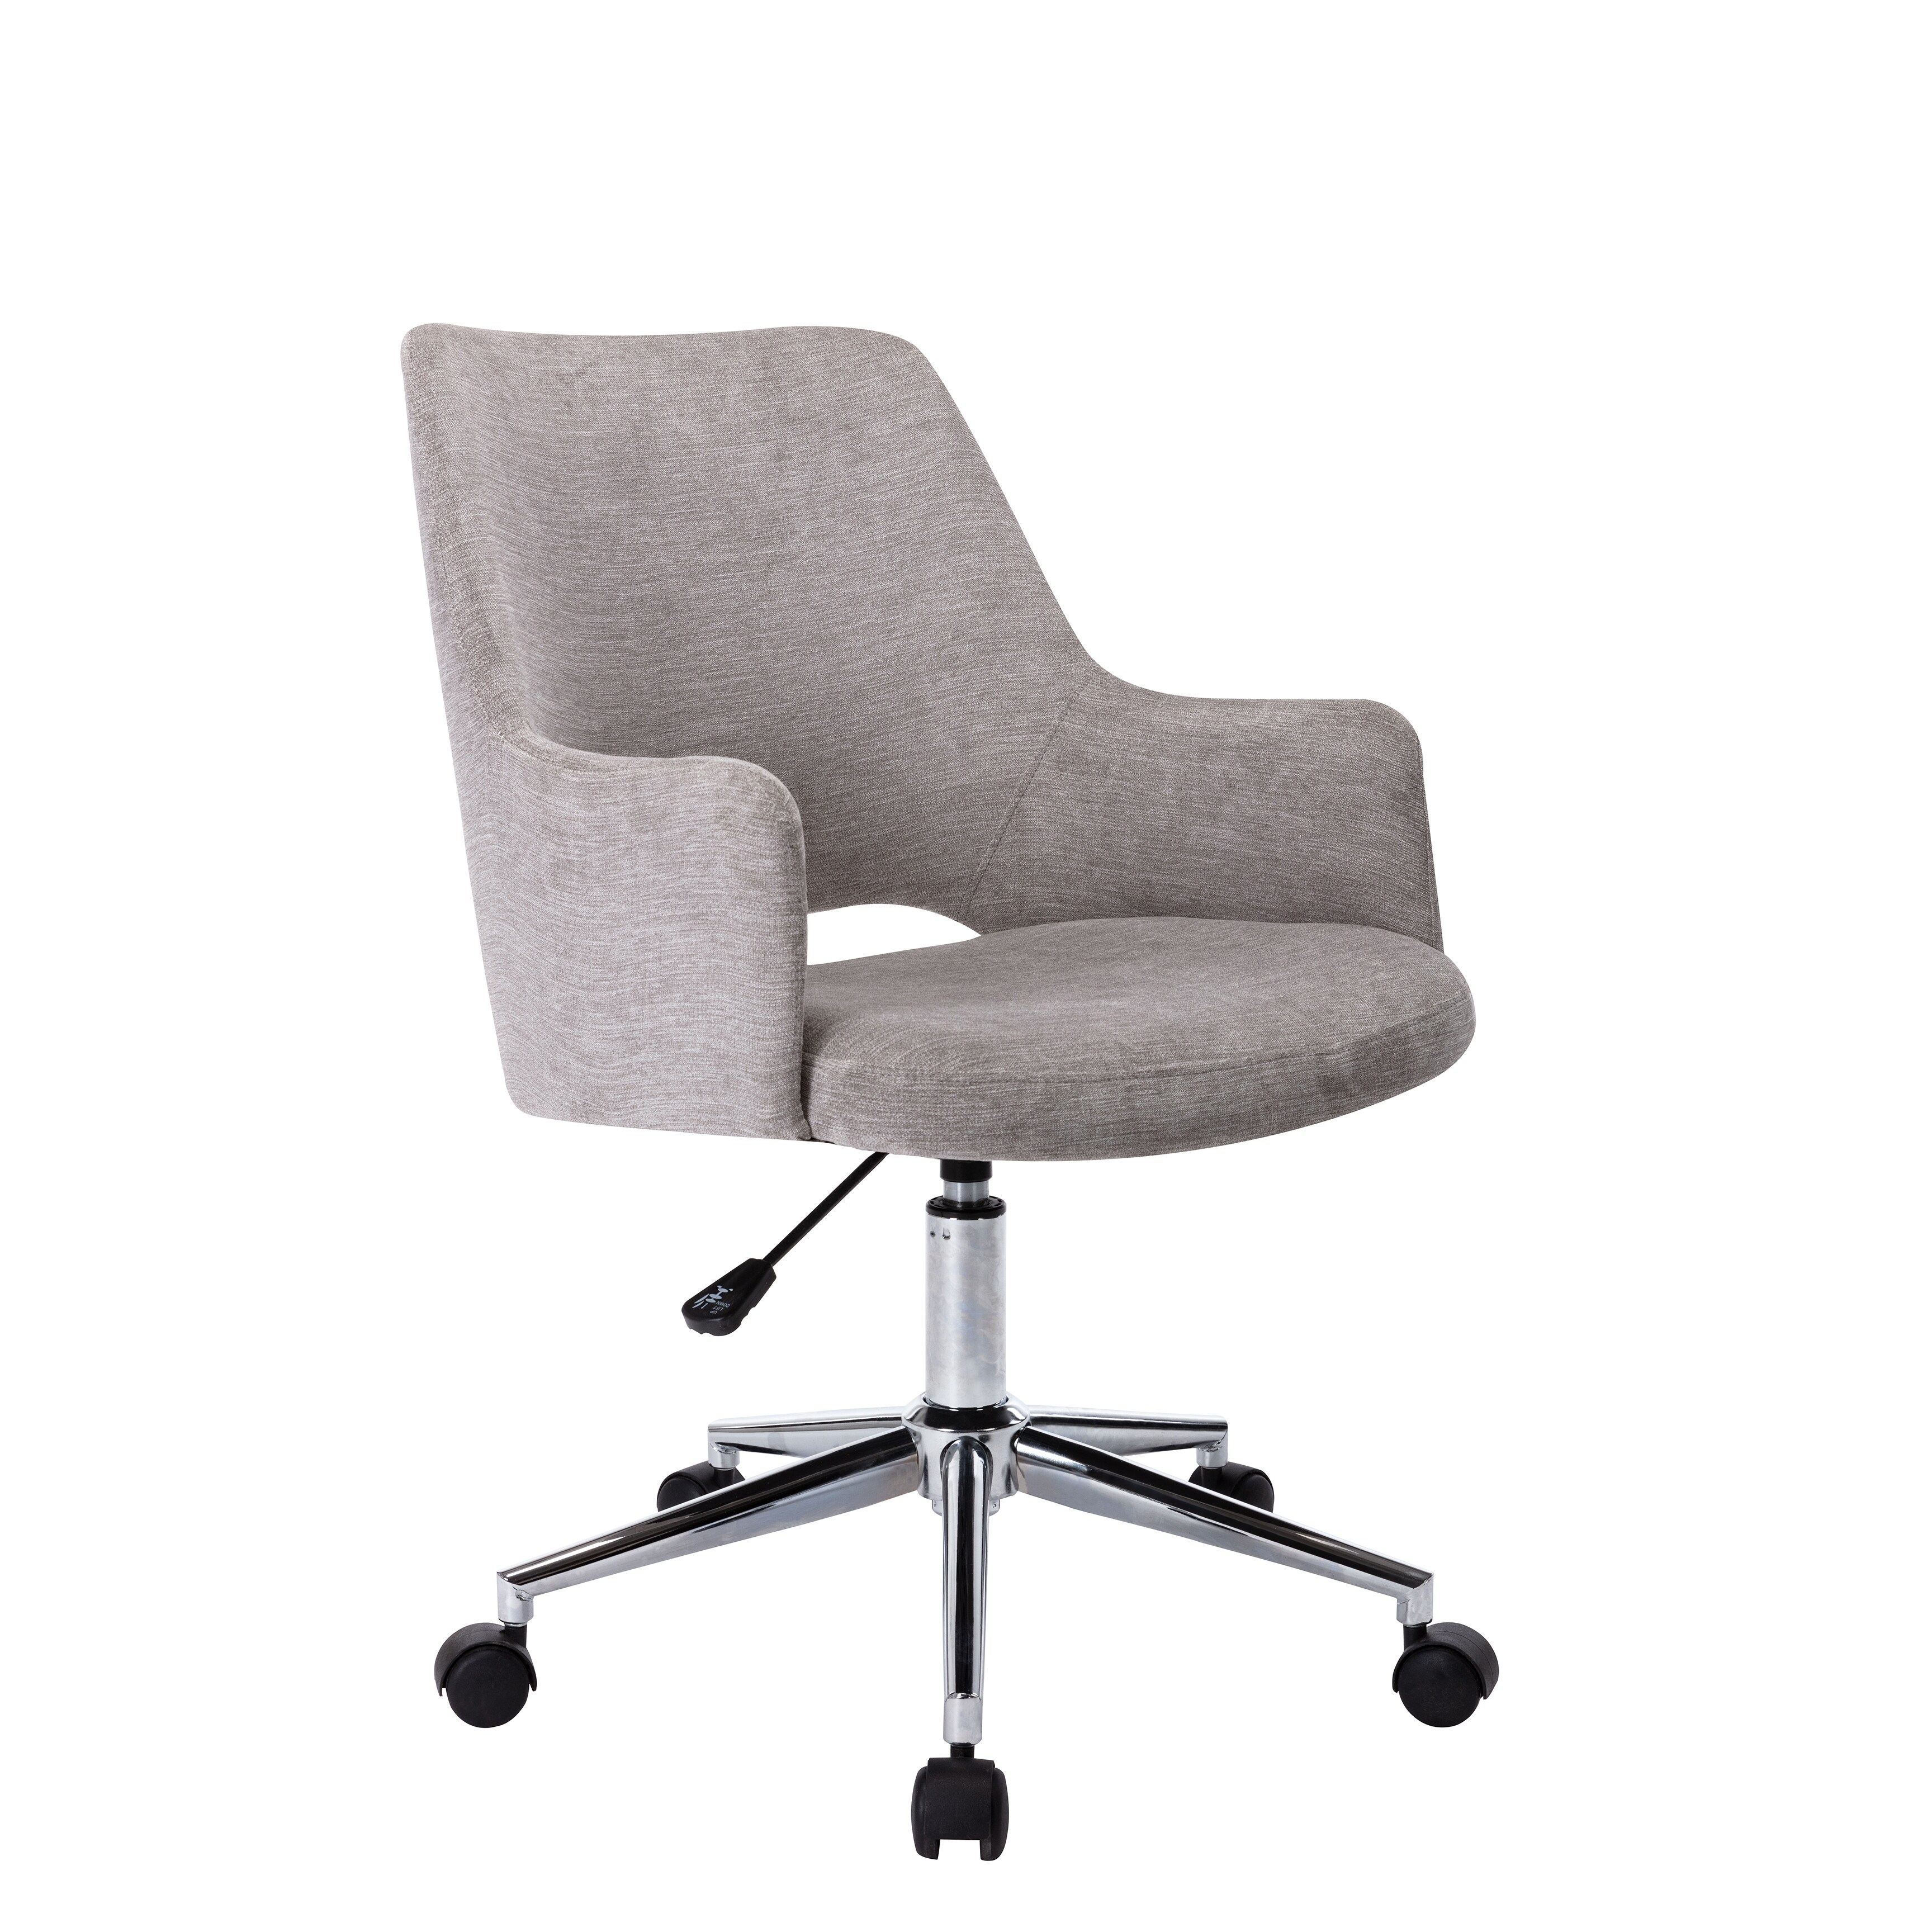 Porthos Home Maesi 360-deg Swivel Office Chair, Hemp Fabric Upholstery